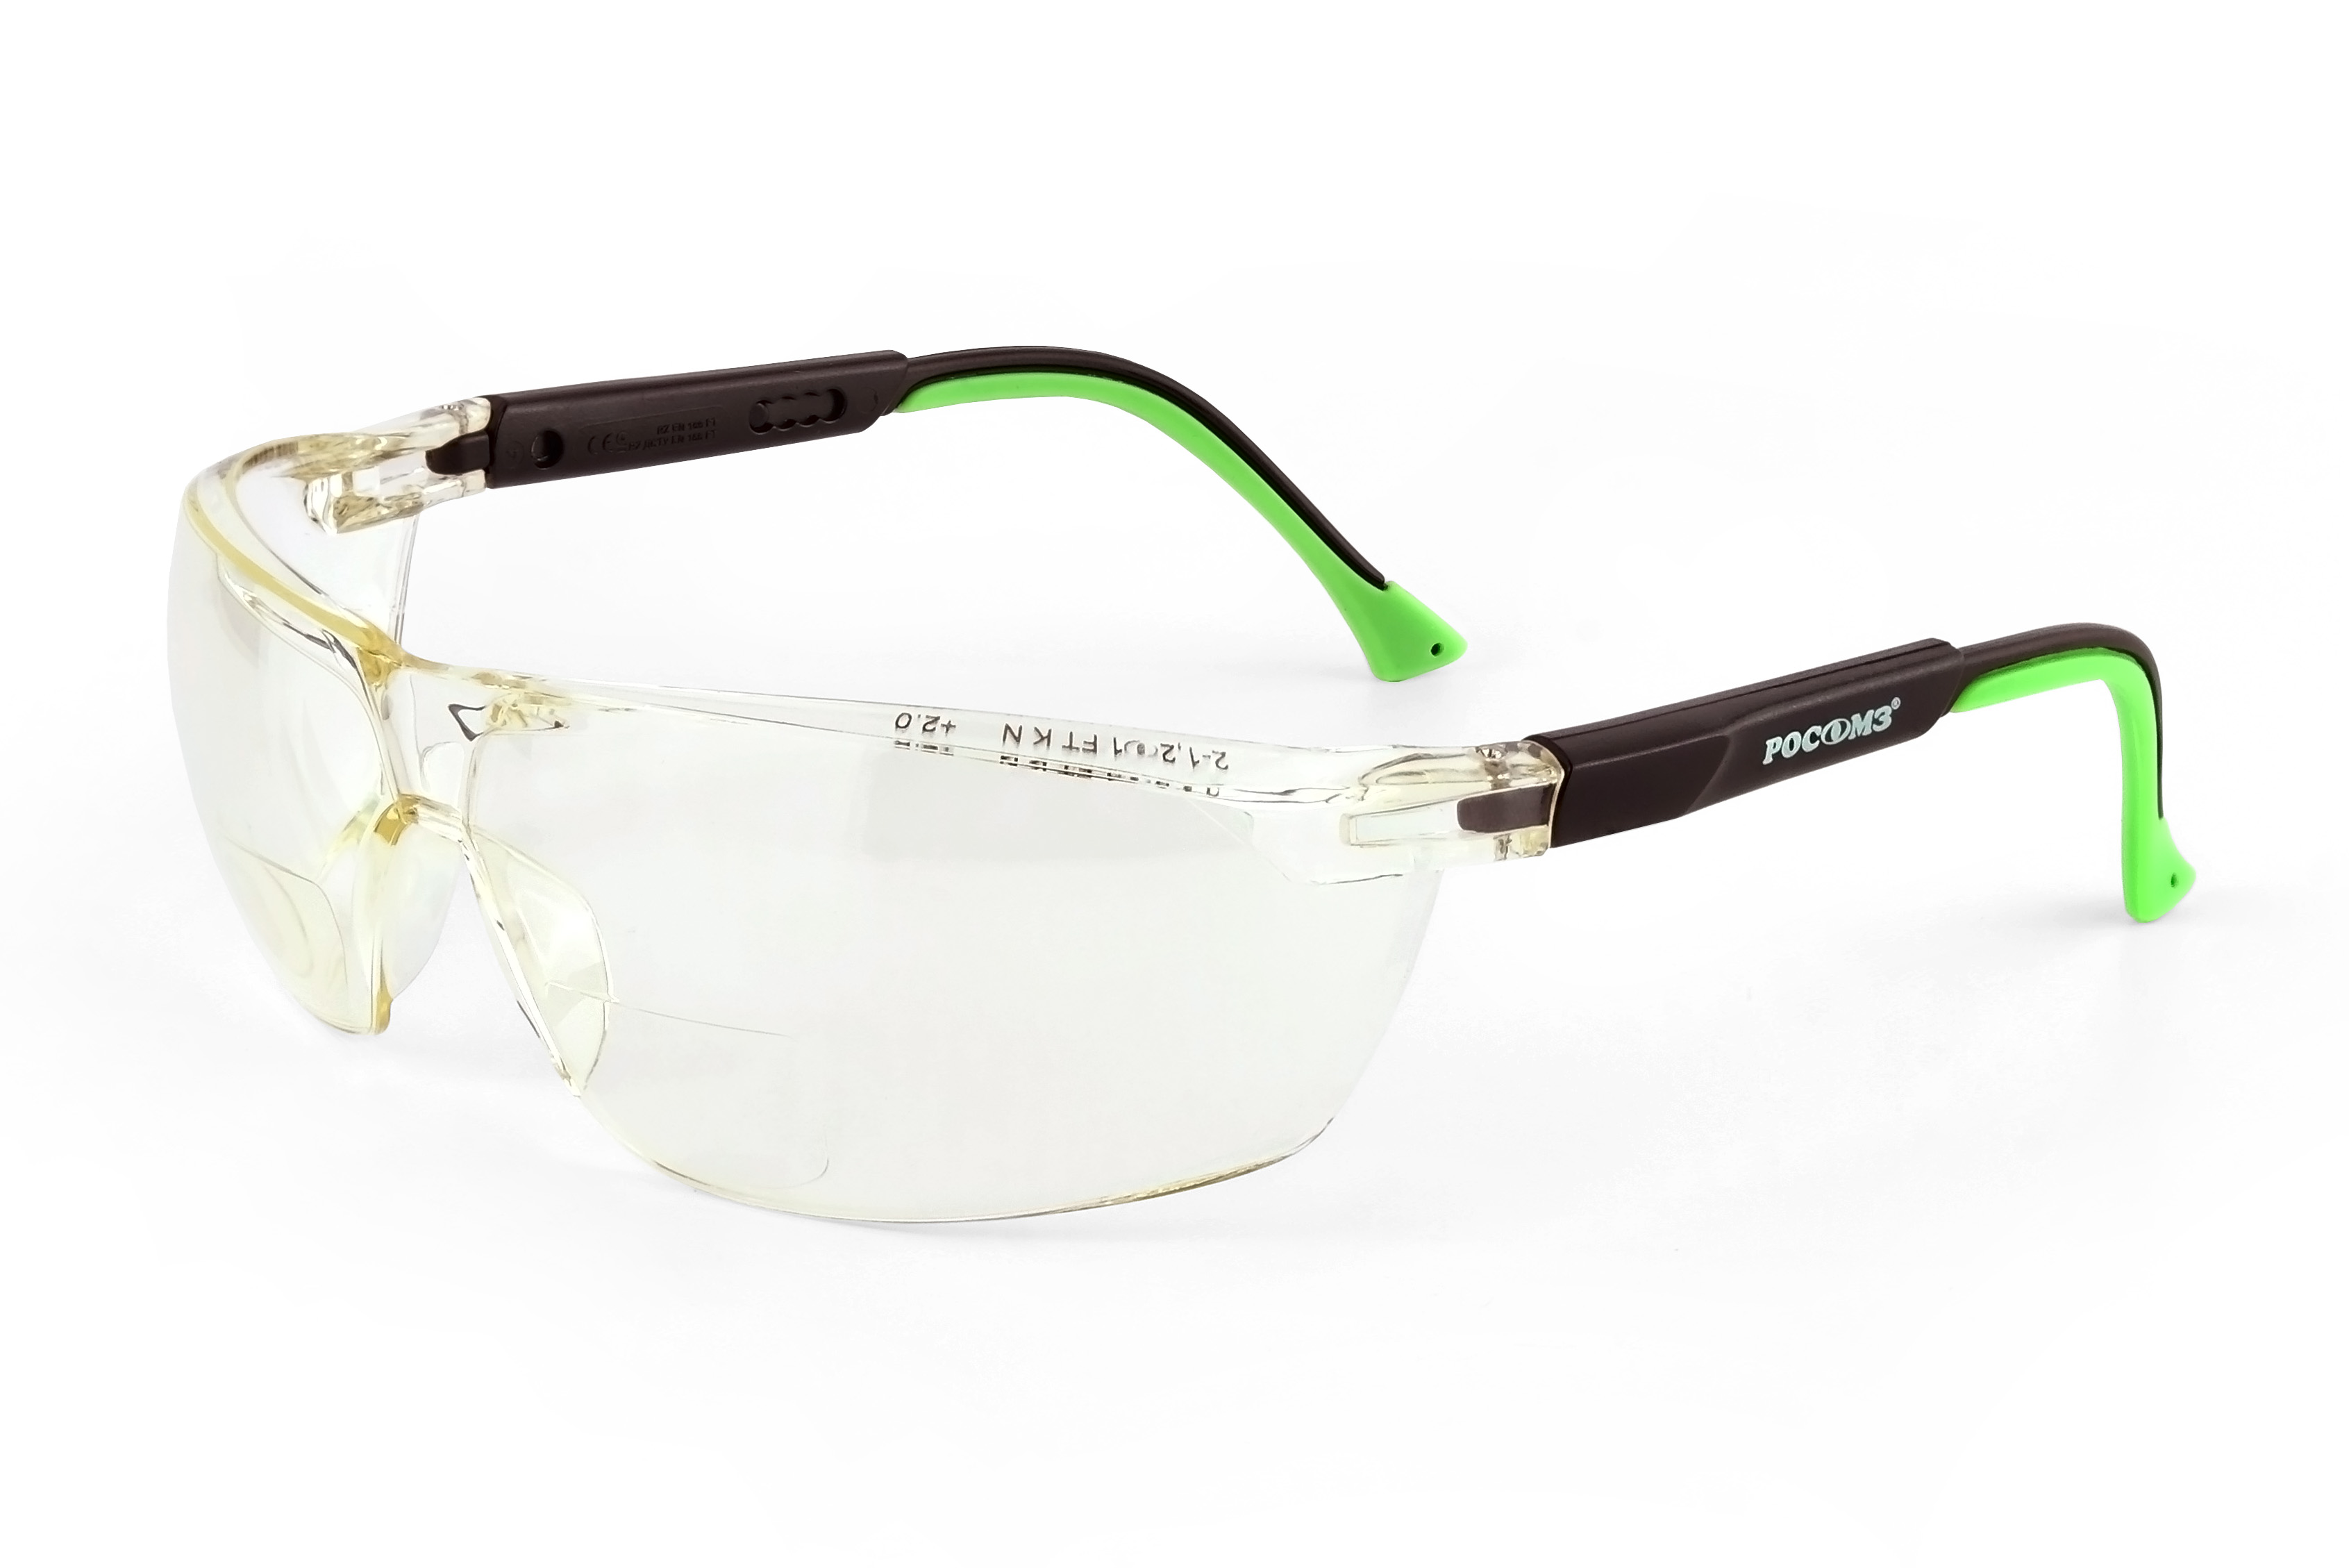 О78 АБСОЛЮТ plus Strong Glass (2-1,2 РС) очки защитные открытые (рефракция +2, 0 дптр)